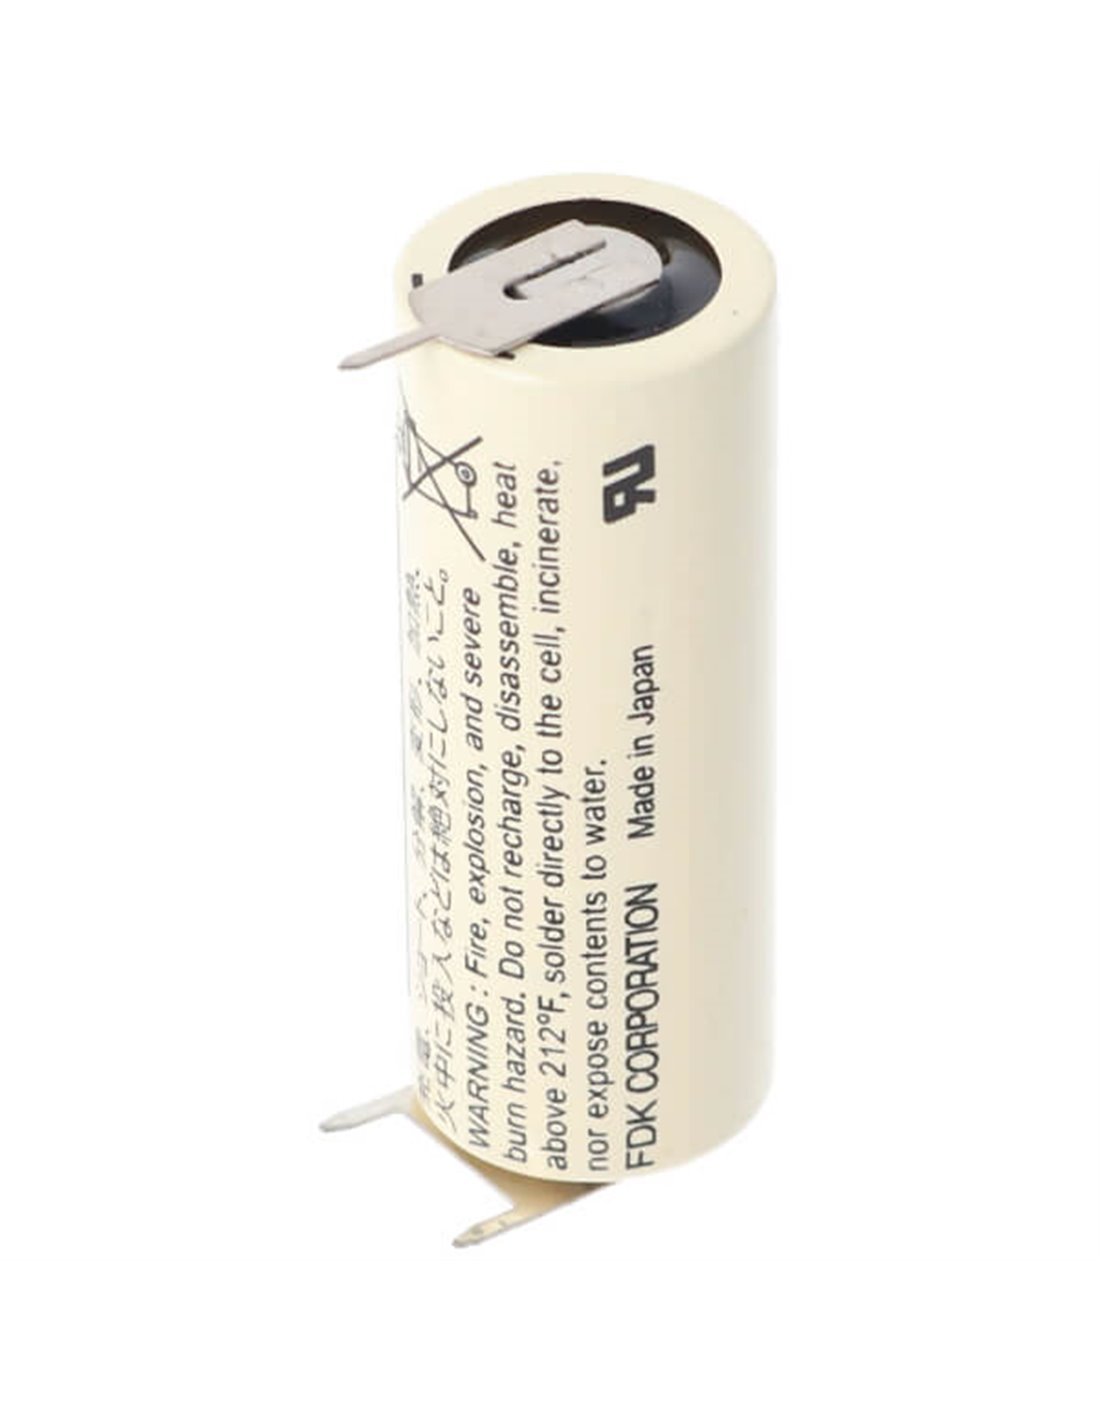 Battery Model Sanyo / FDK Sanyo Cr17450se-r Plc Battery, Cr17450se, Cr17450er 3V, 2400 mAh - 7.2Wh